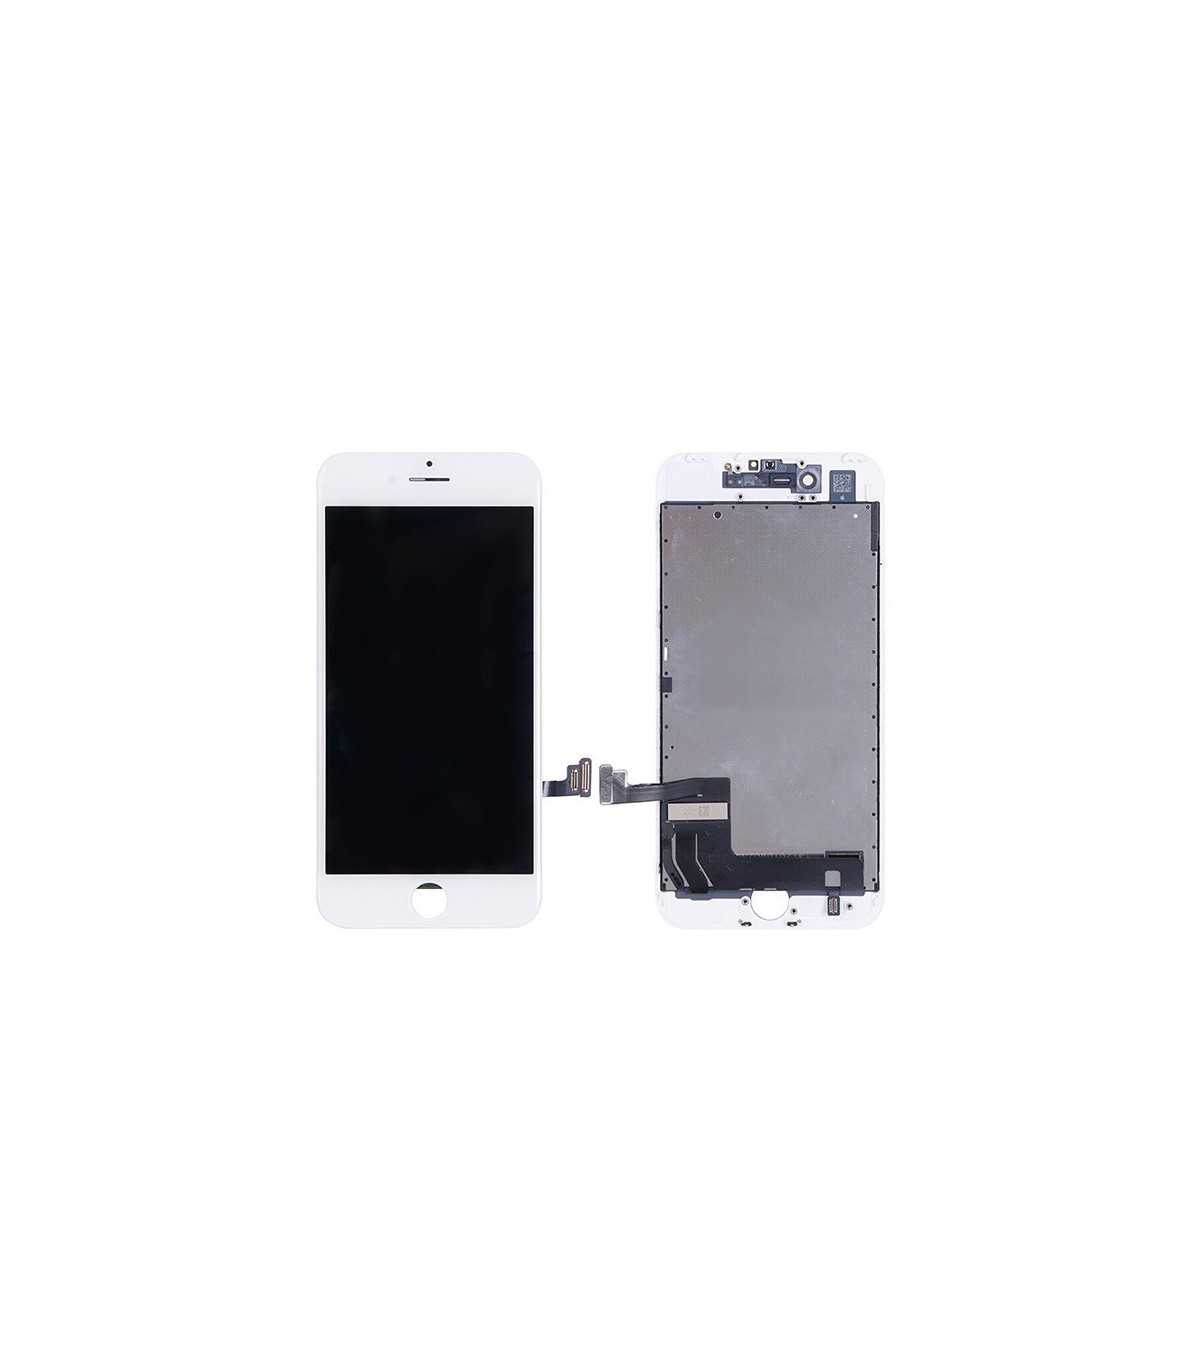 Reparateur ecran iPhone 7 Original- Reparation ecran iPhone 7 -Reparer